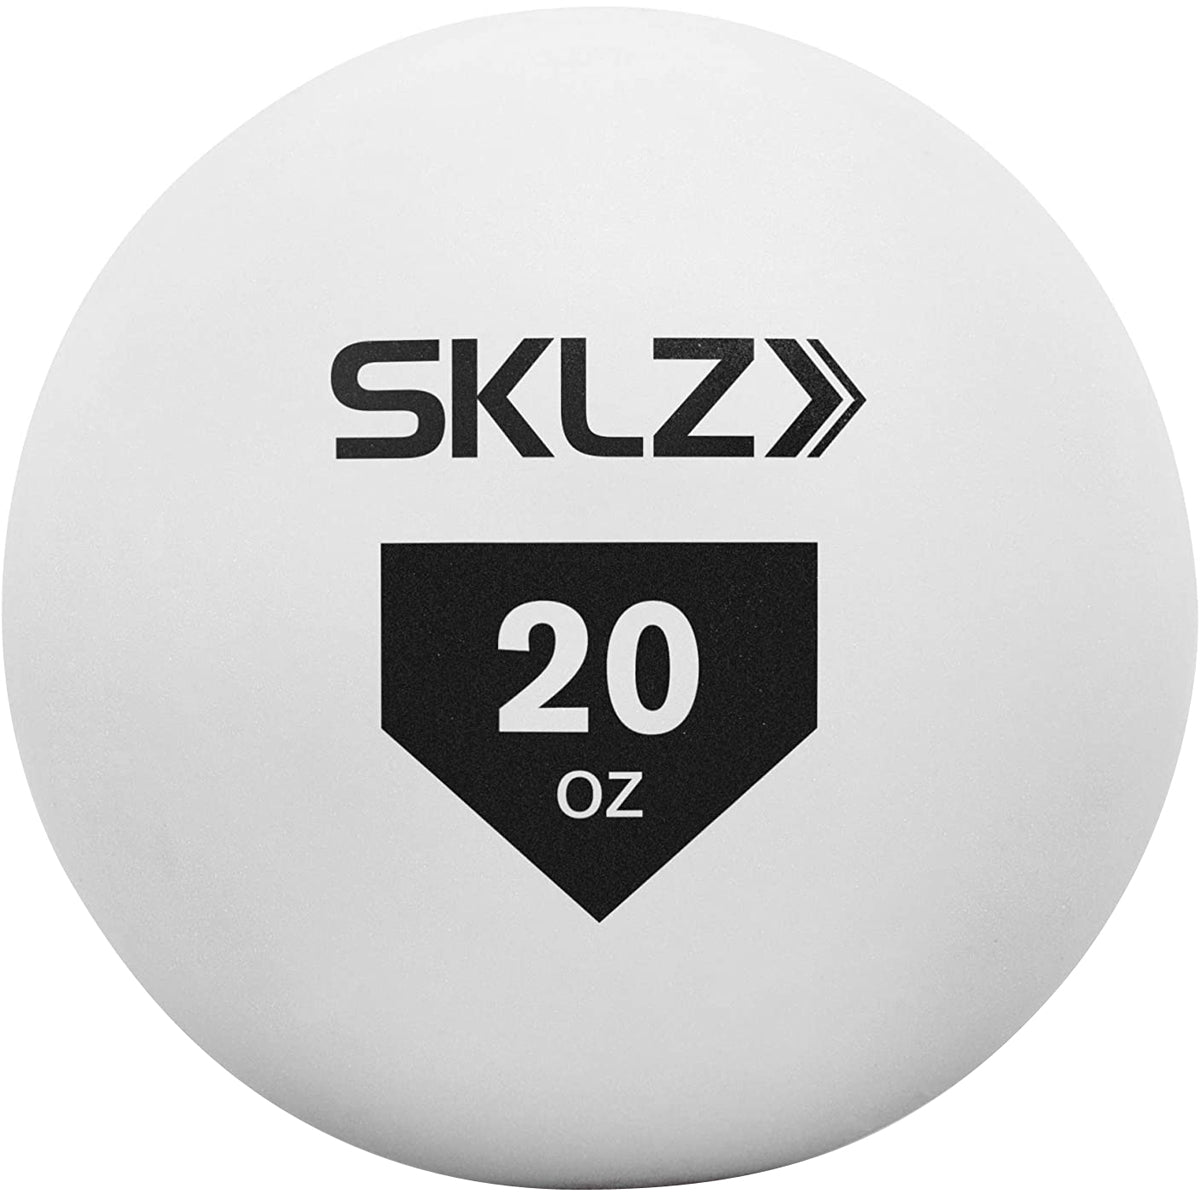 SKLZ Contact Training Baseball - White SKLZ